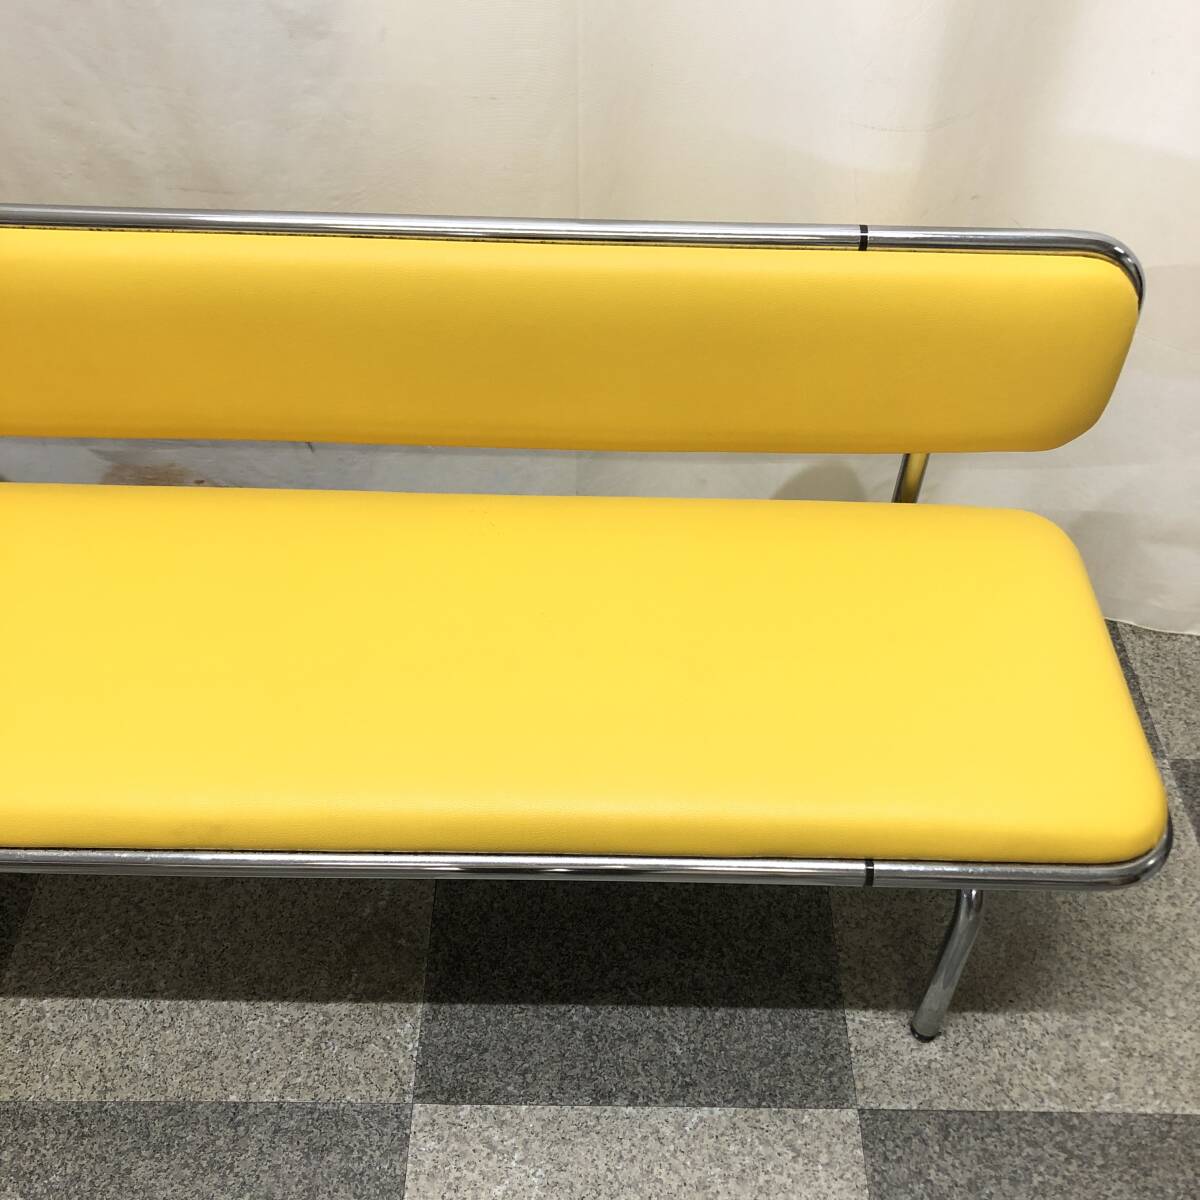 VPLUS стул для лобби . есть ширина примерно 180cm желтый цвет желтый длина стул ... больница маленький .. объект ... вход многоцелевой Space pop bench 